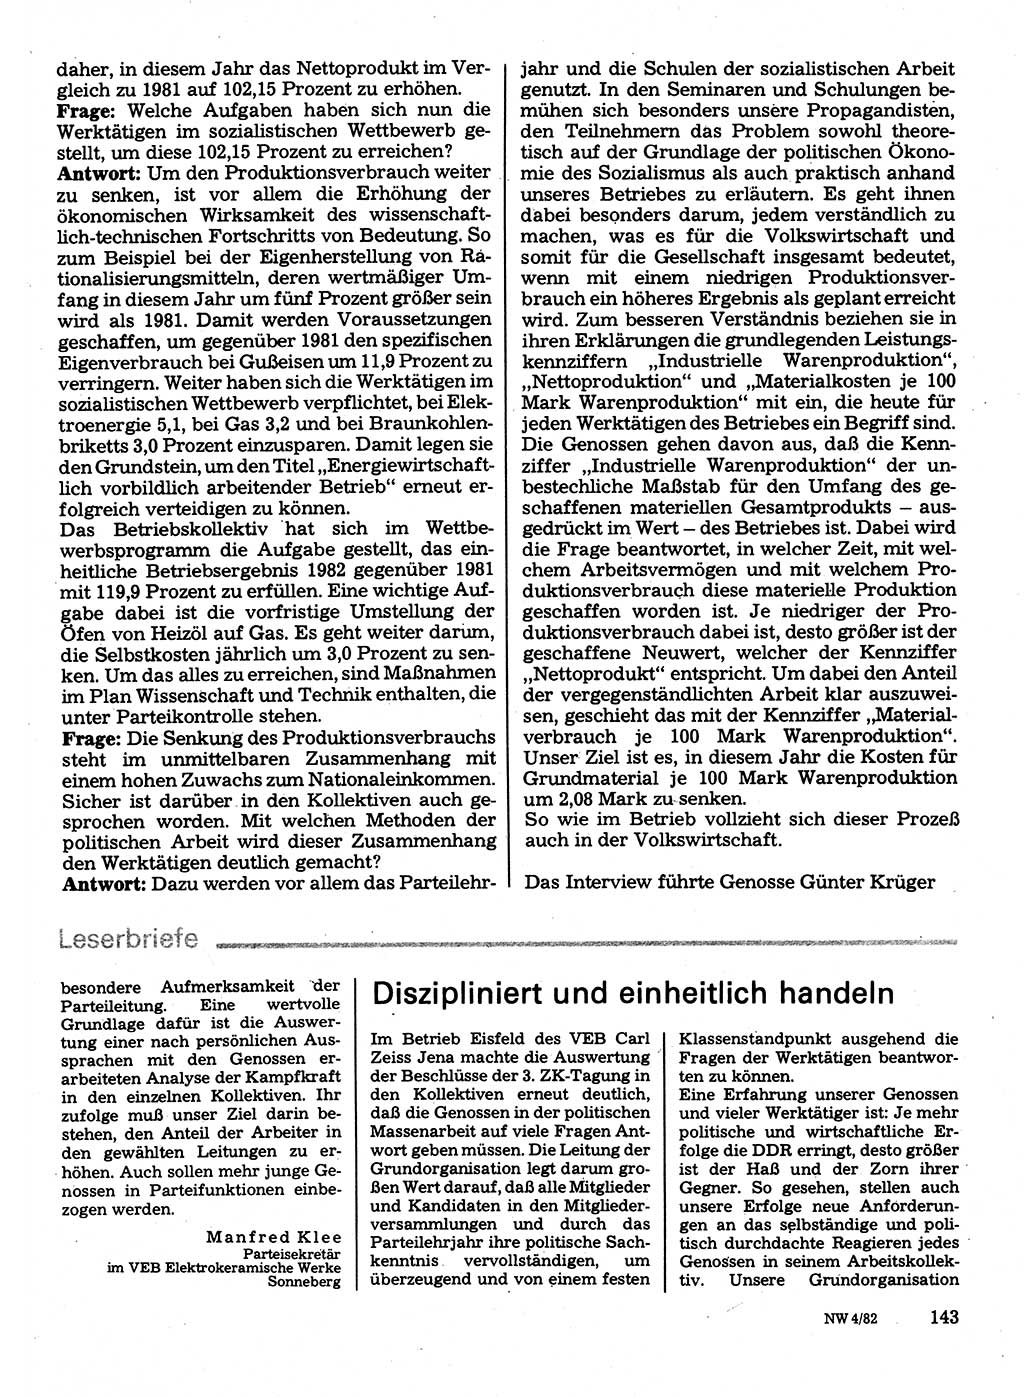 Neuer Weg (NW), Organ des Zentralkomitees (ZK) der SED (Sozialistische Einheitspartei Deutschlands) für Fragen des Parteilebens, 37. Jahrgang [Deutsche Demokratische Republik (DDR)] 1982, Seite 143 (NW ZK SED DDR 1982, S. 143)